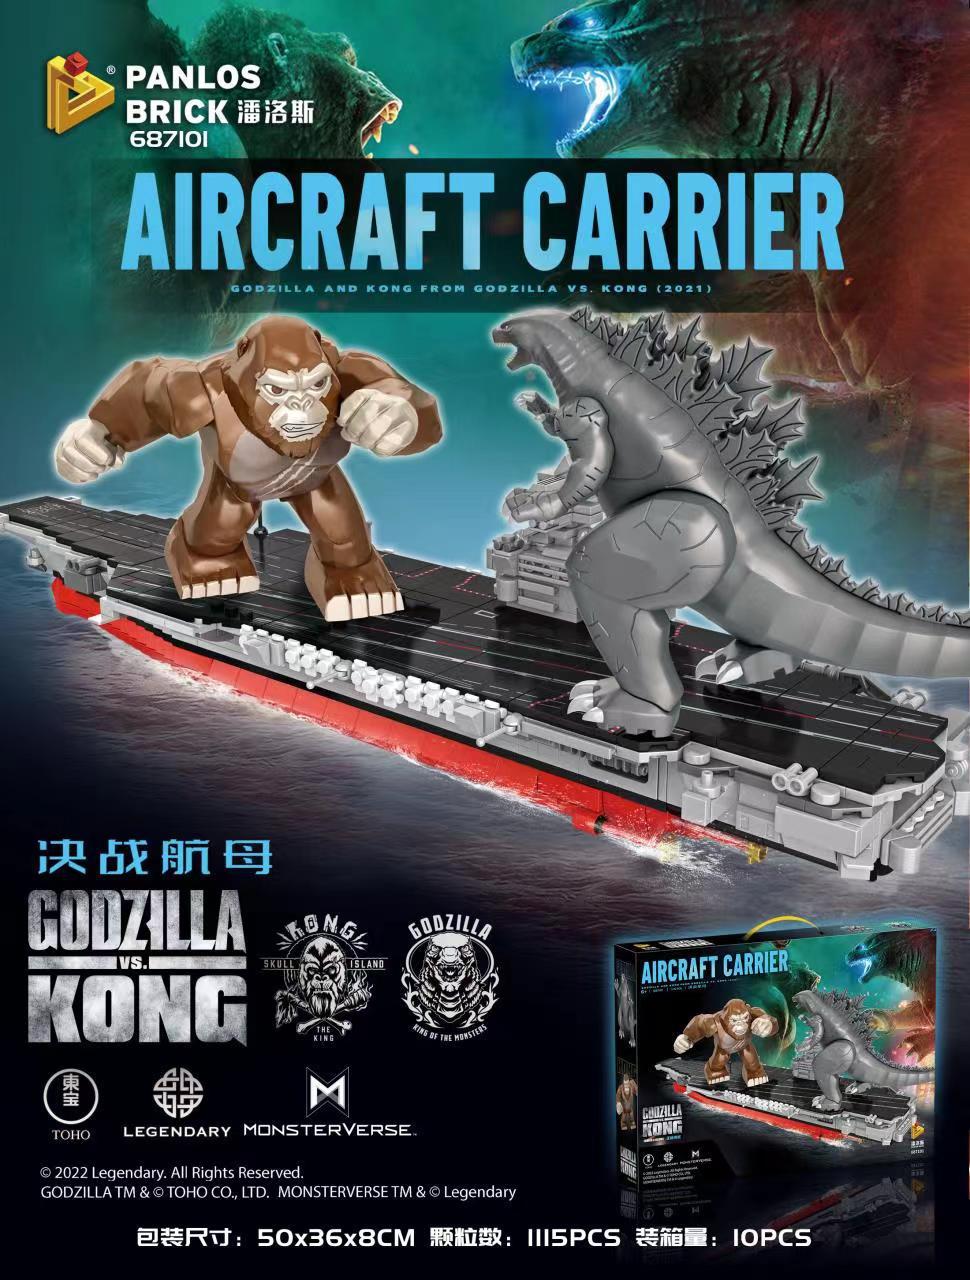 Godzilla vs. King Kong: Battle of the Carriers PANLOSBRICK 687101 Creator With 1115pcs